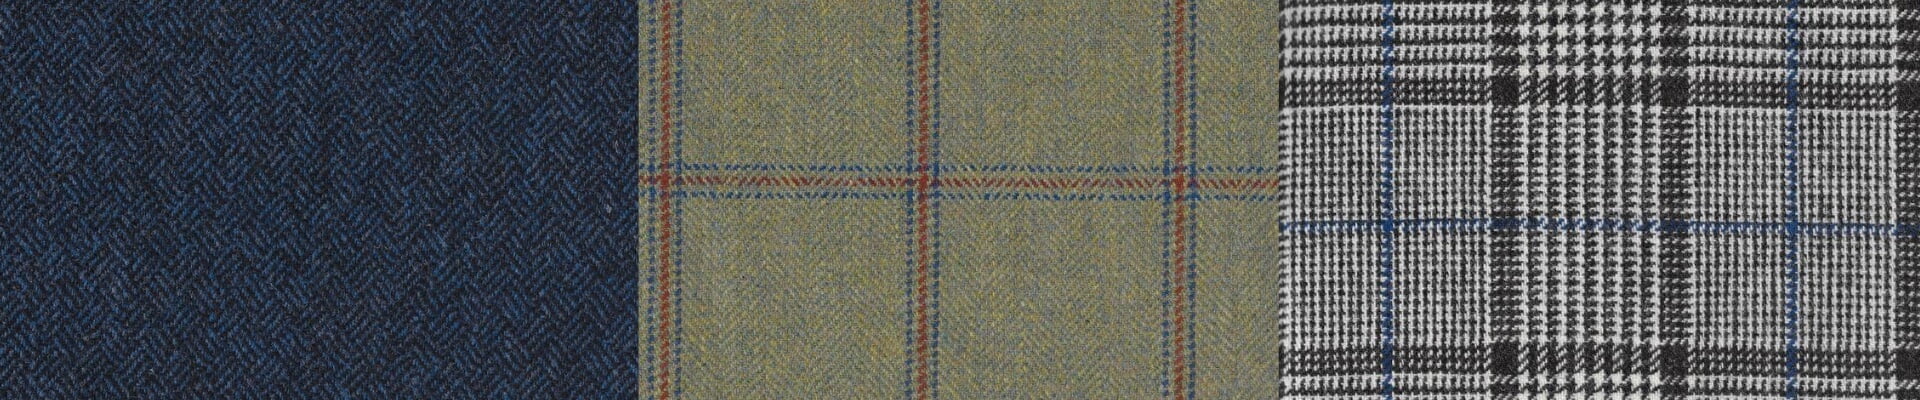 Tweed fabrics